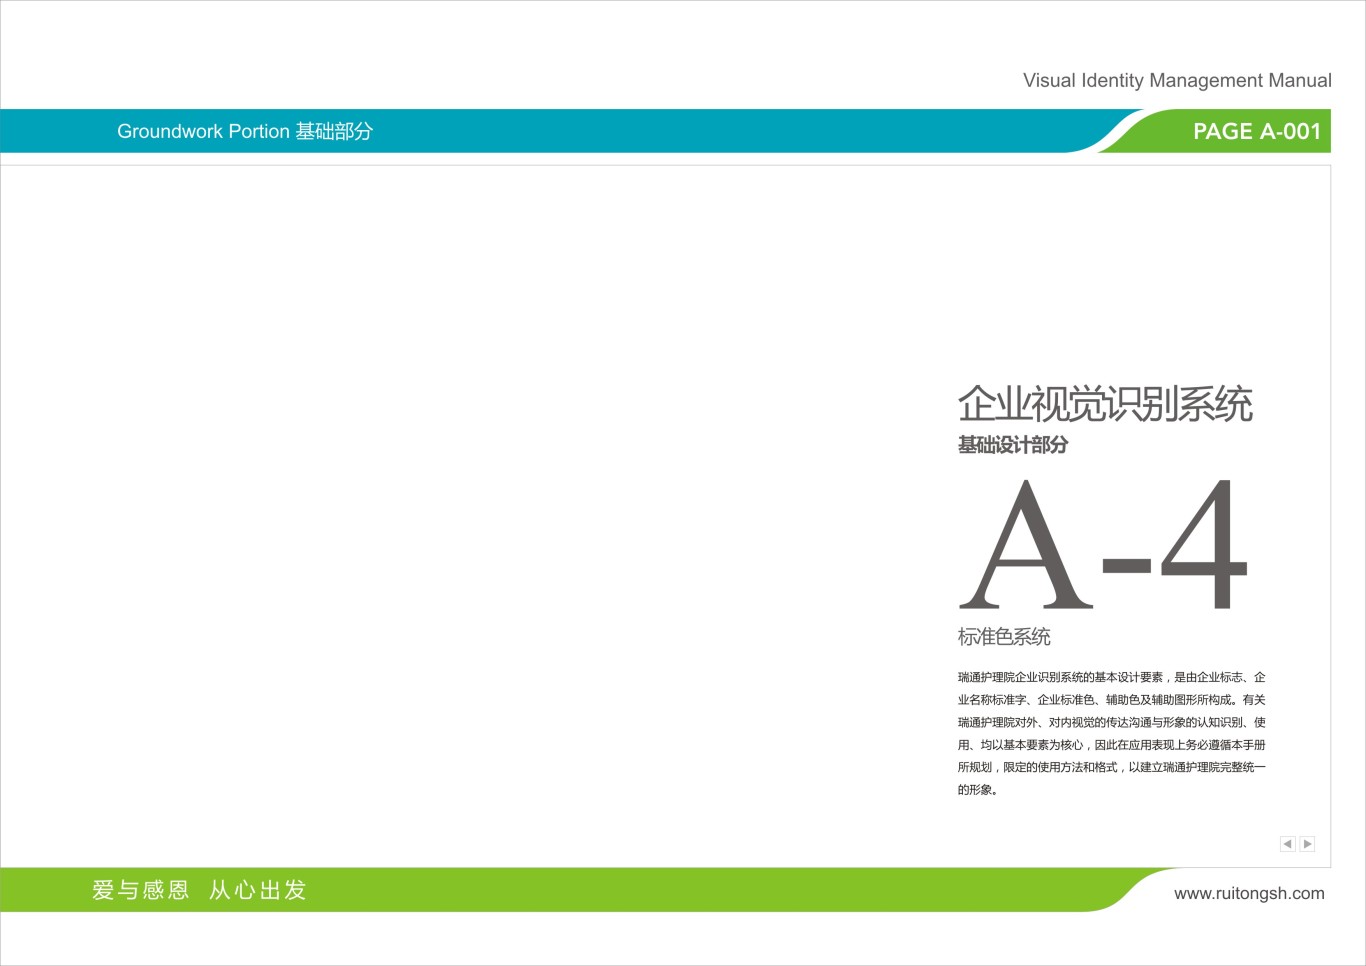 上海瑞通护理院标志VI设计图29